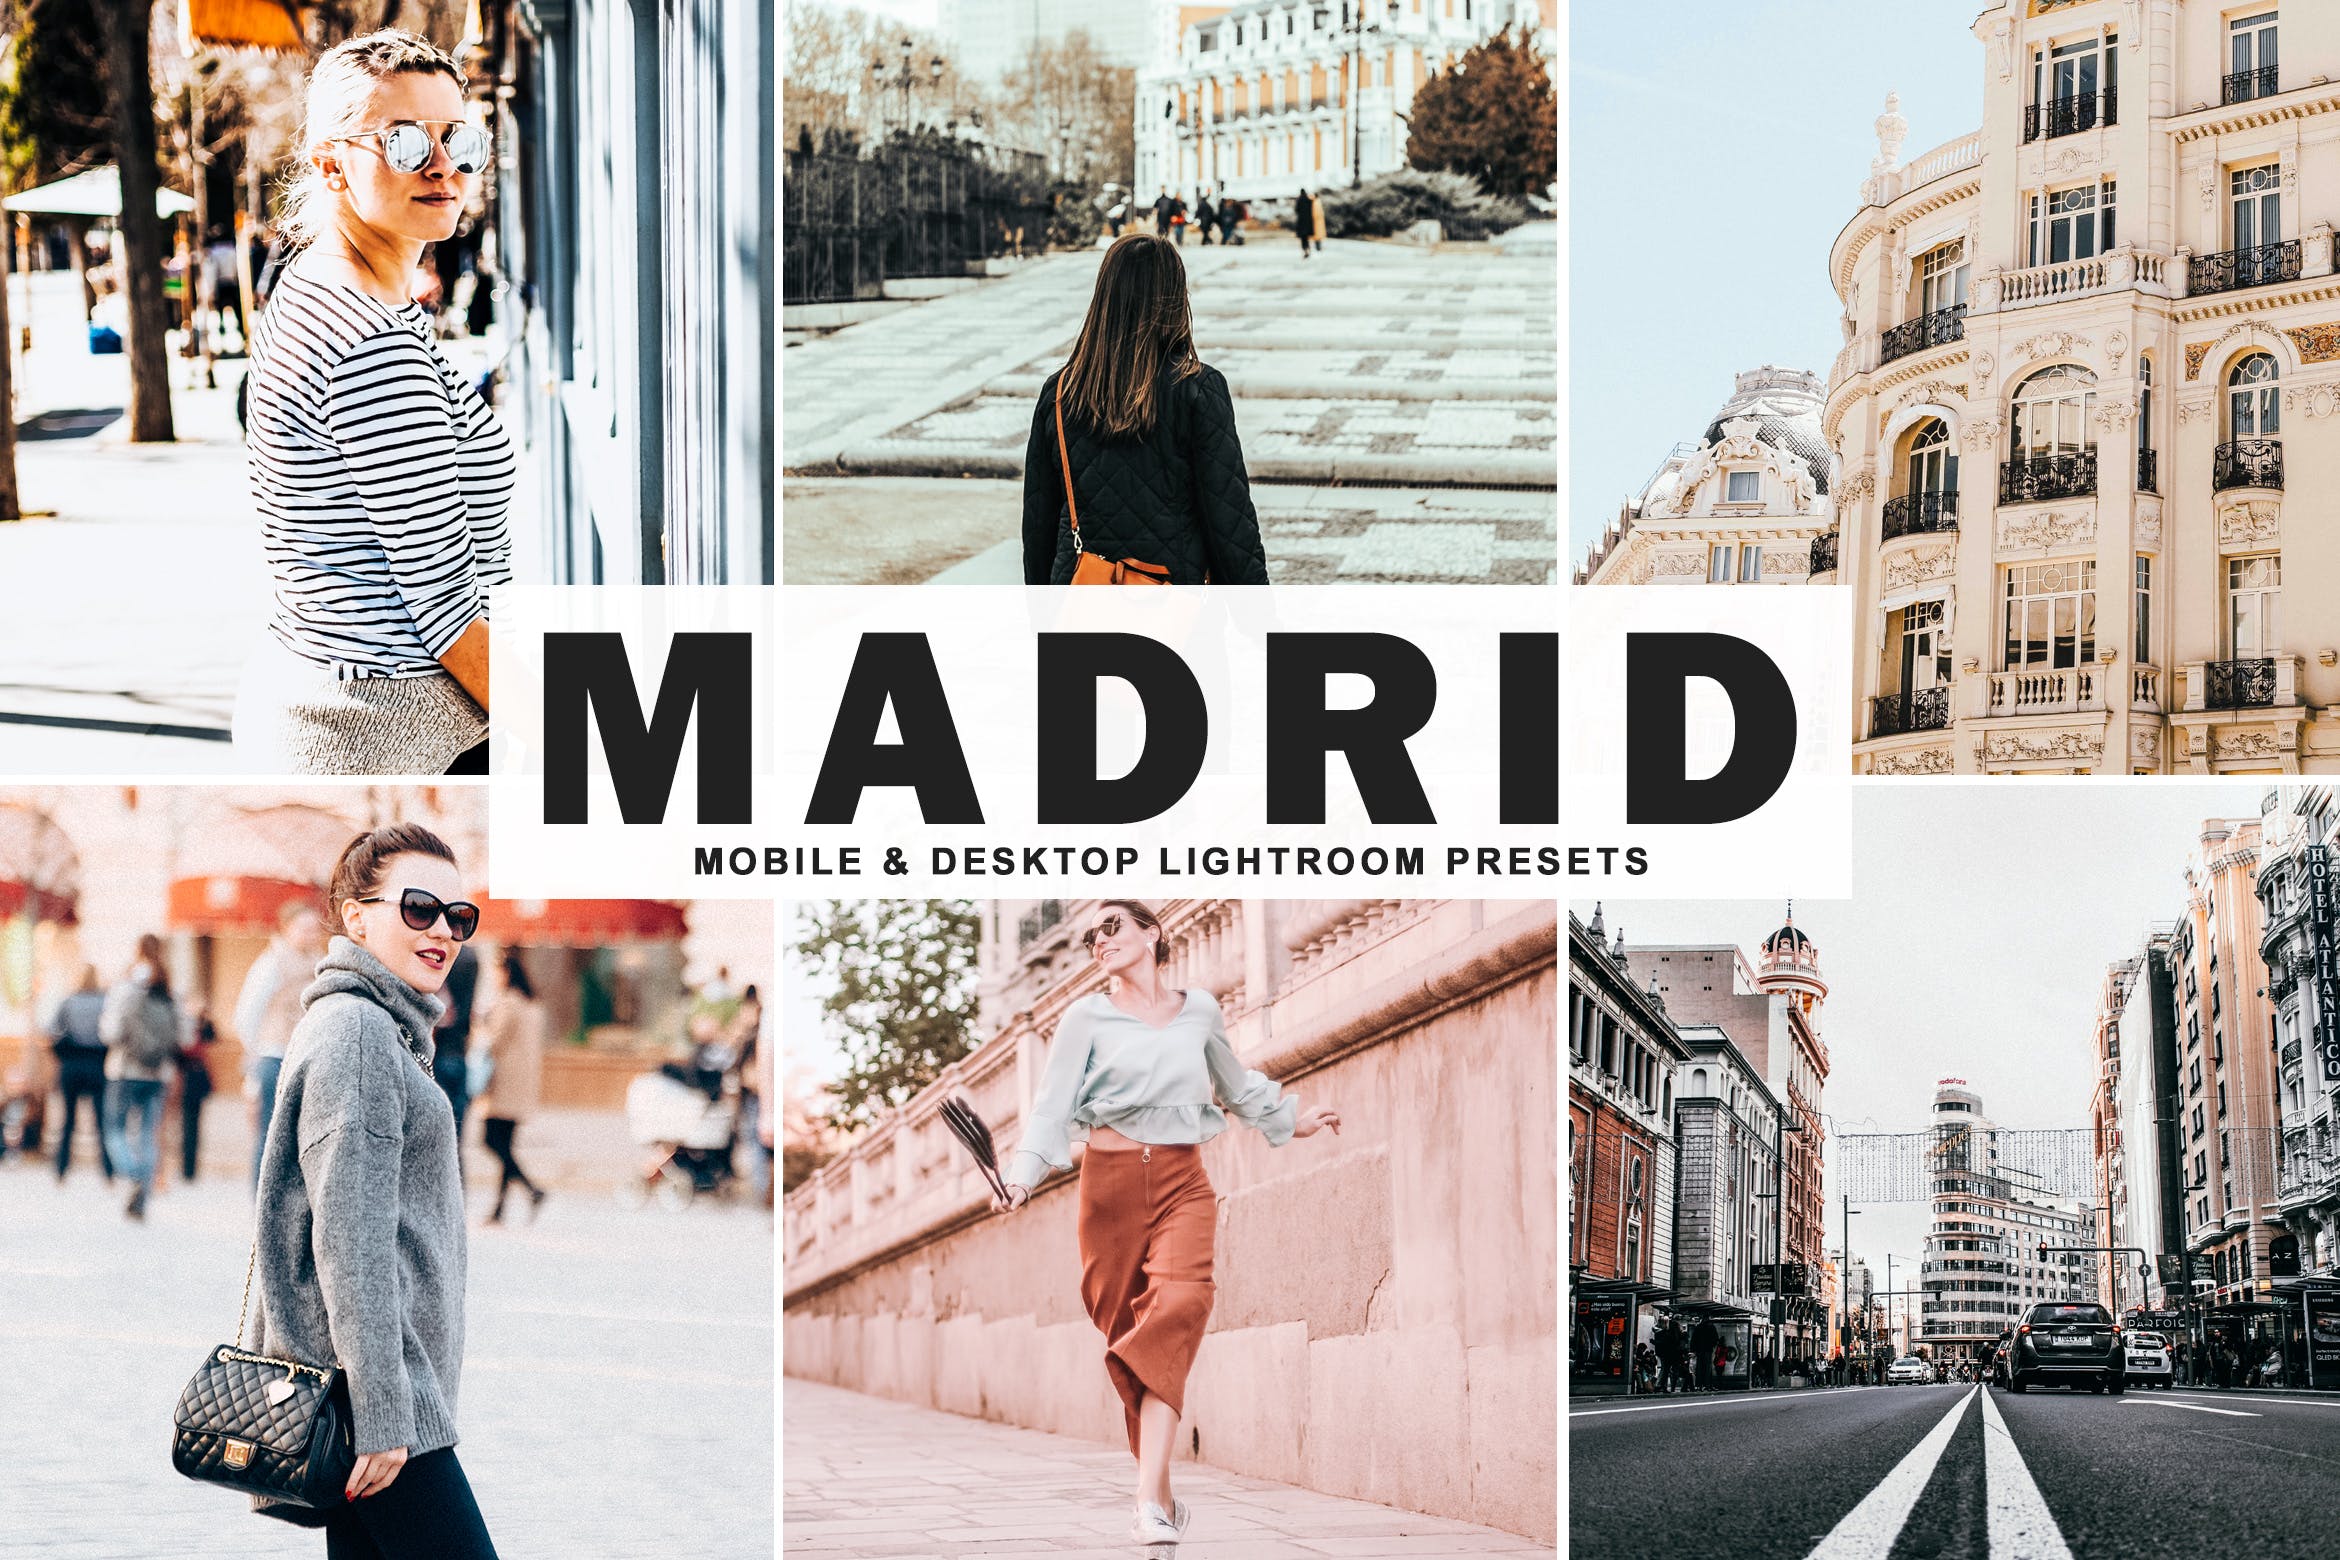 街拍时装摄影必备的调色滤镜亿图网易图库精选LR预设 Madrid Mobile & Desktop Lightroom Presets插图